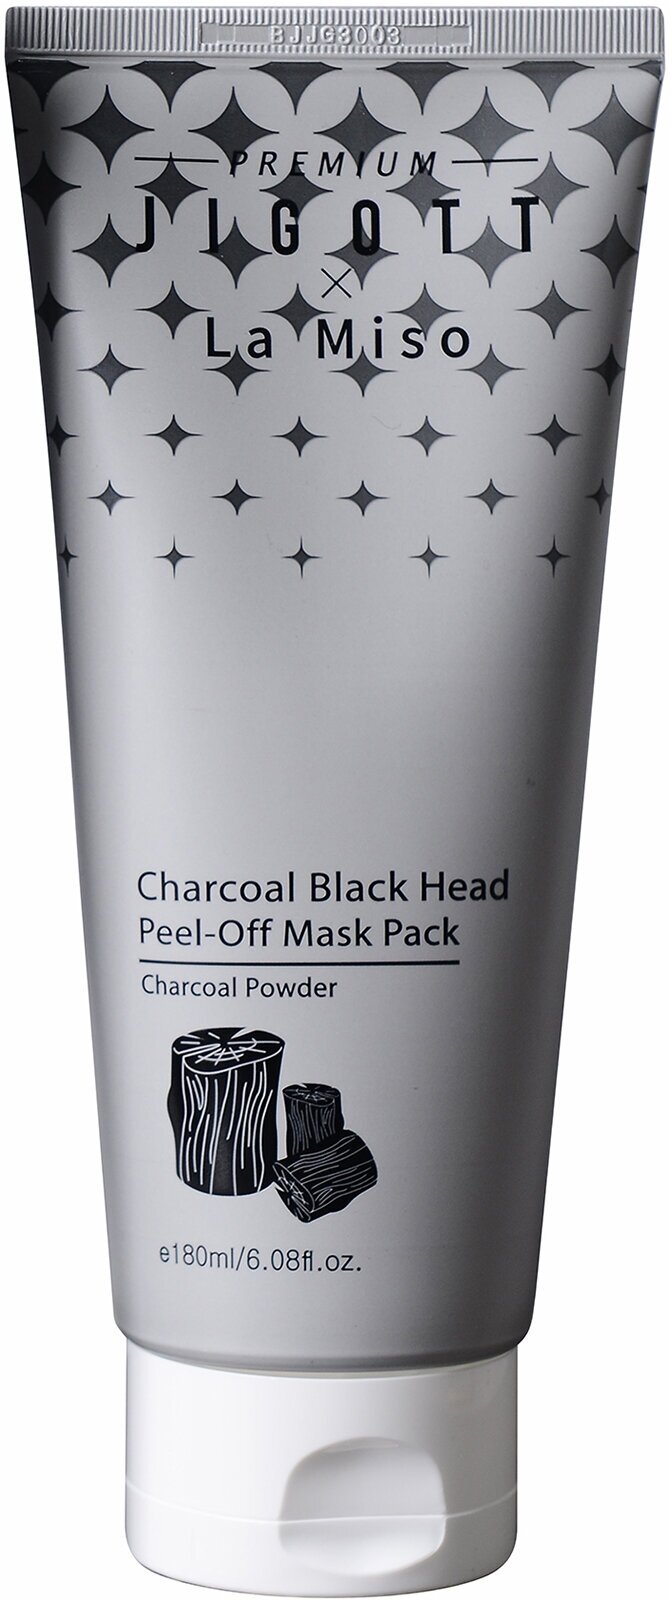 Маска-пленка от черных точек с углем Premium Jigott&La Miso Charcoal Black Head Peel-Off Mask Pack 180 мл .